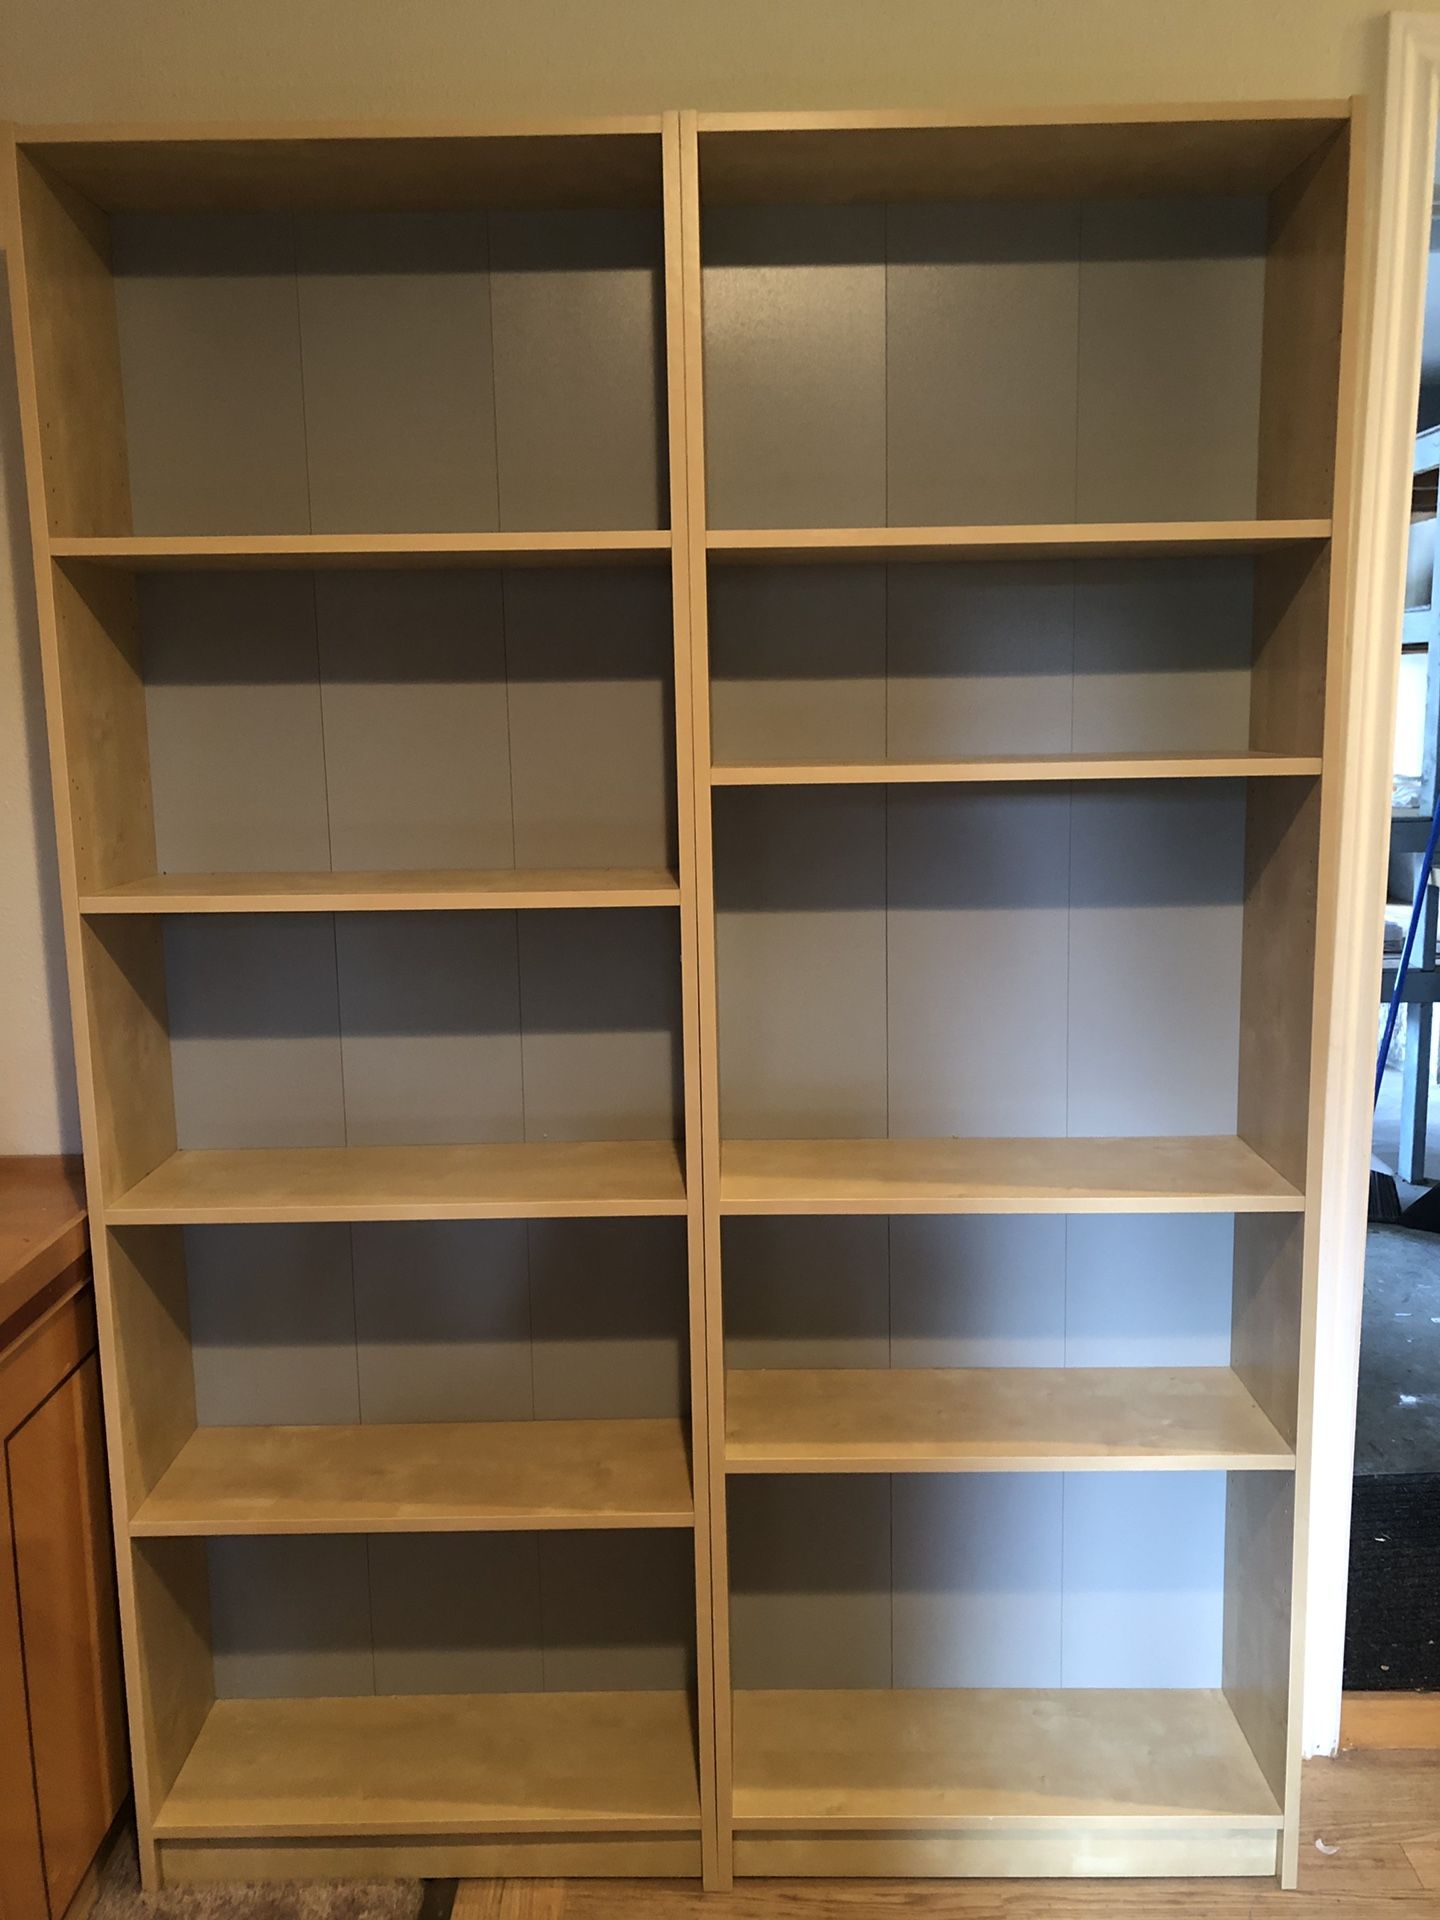 IKEA bookshelves